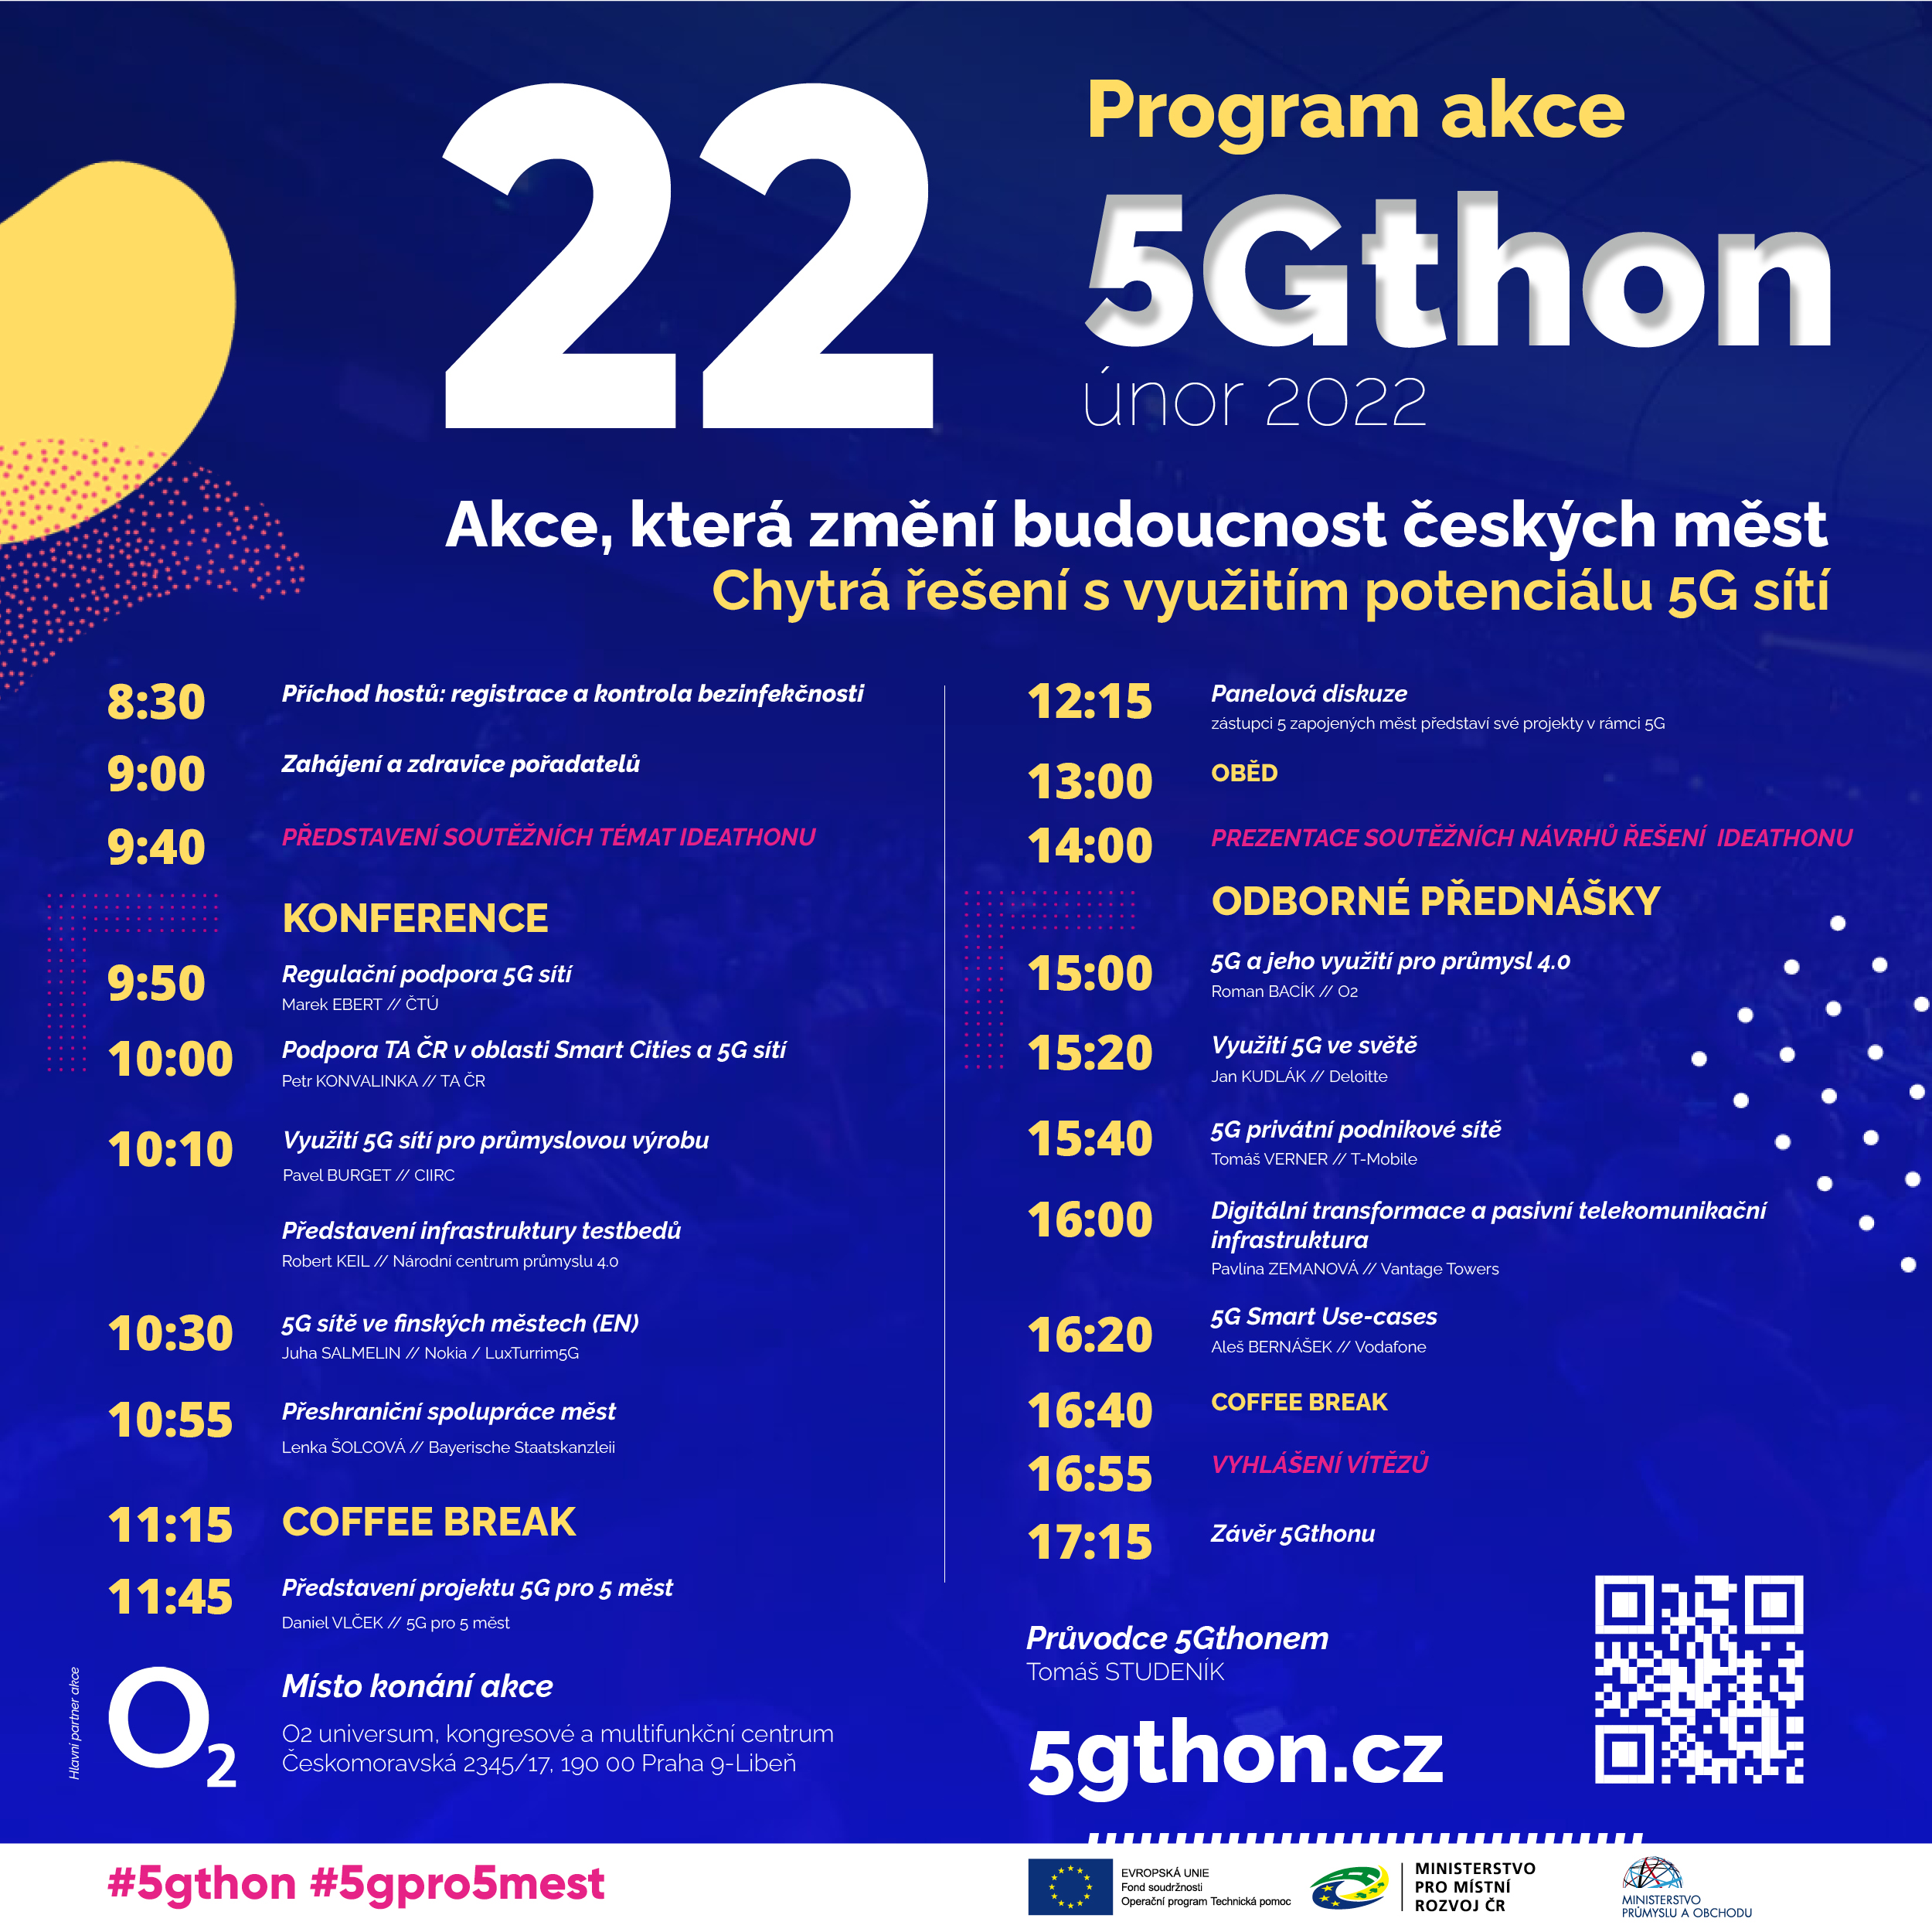 Program-akce-5Gthon_1x1.jpg